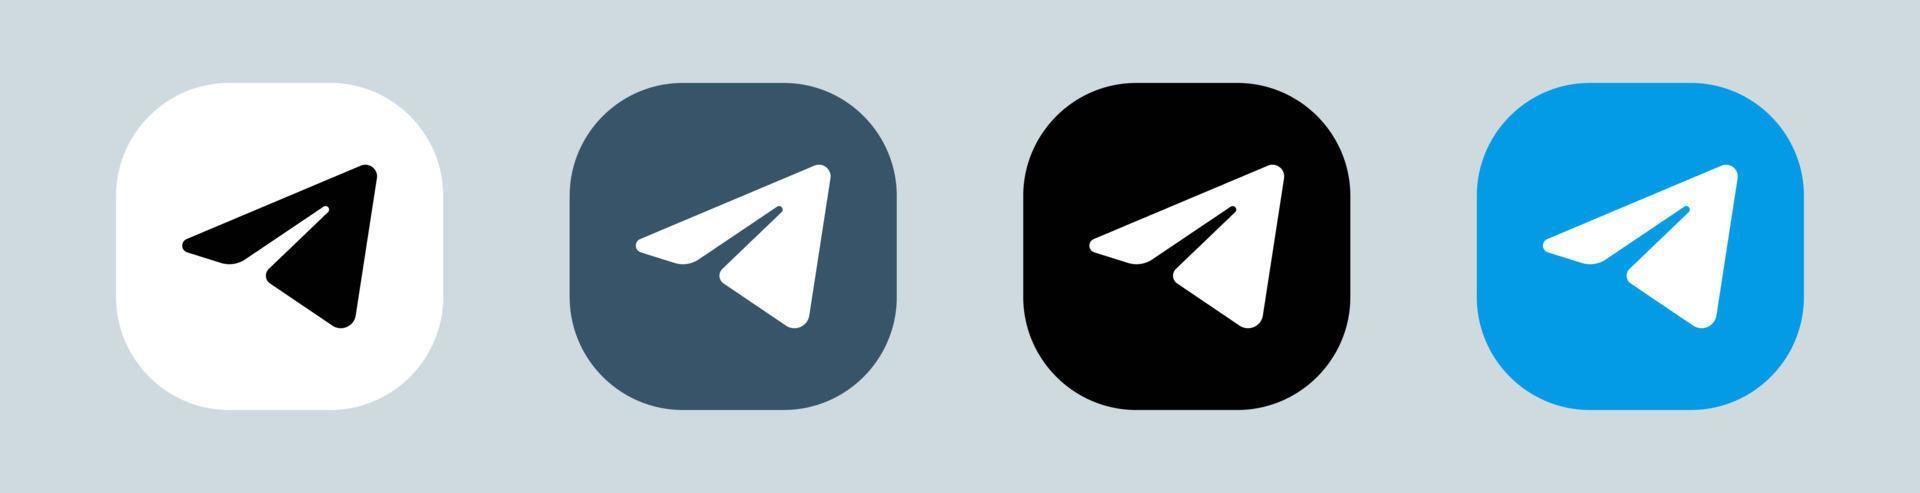 logotipo de telegrama en cuadrado. Ilustración de vector de logotipo de aplicación de mensajería popular.